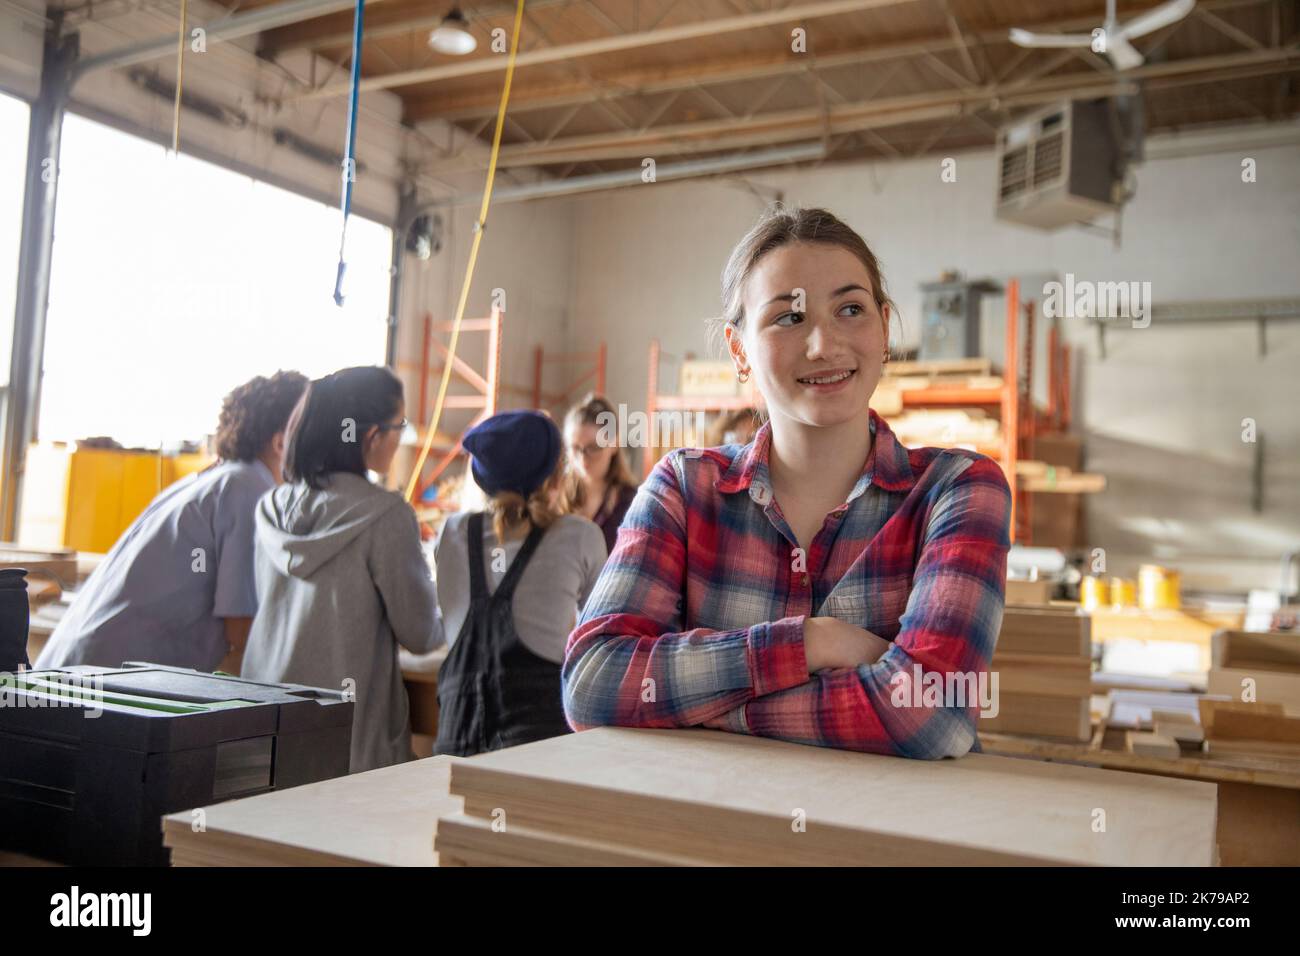 Retrato de una estudiante en el taller mirando sonriendo Foto de stock